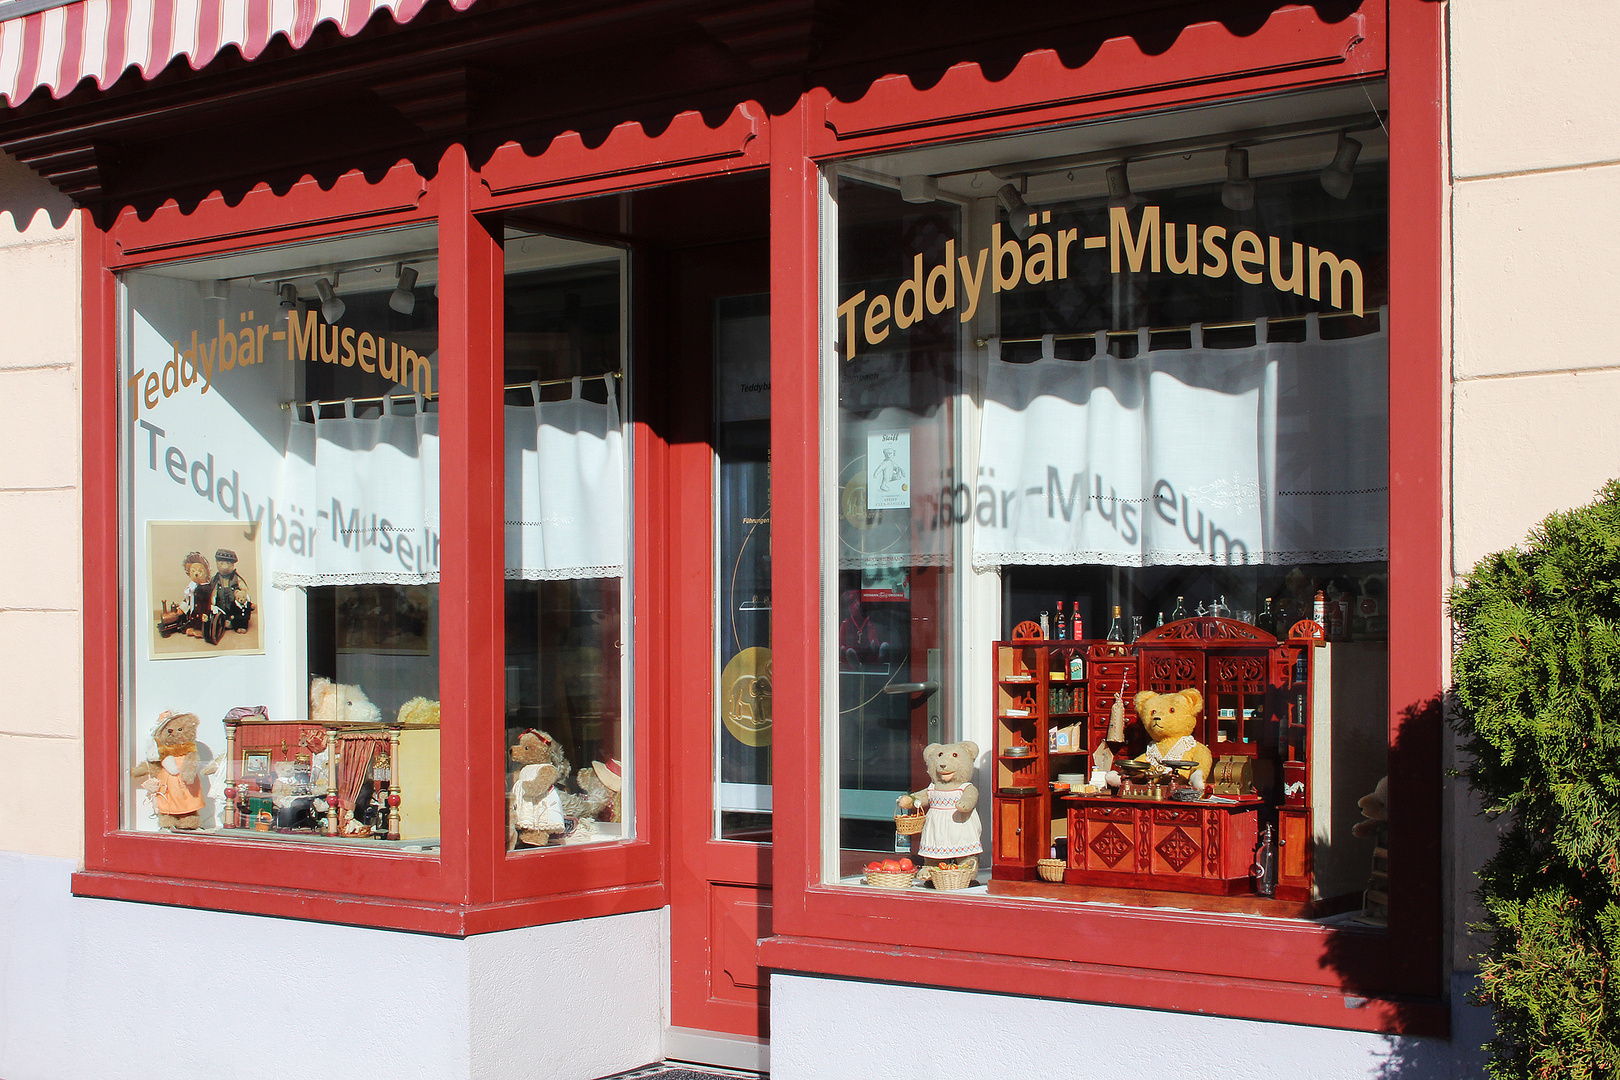 Teddybär Museum